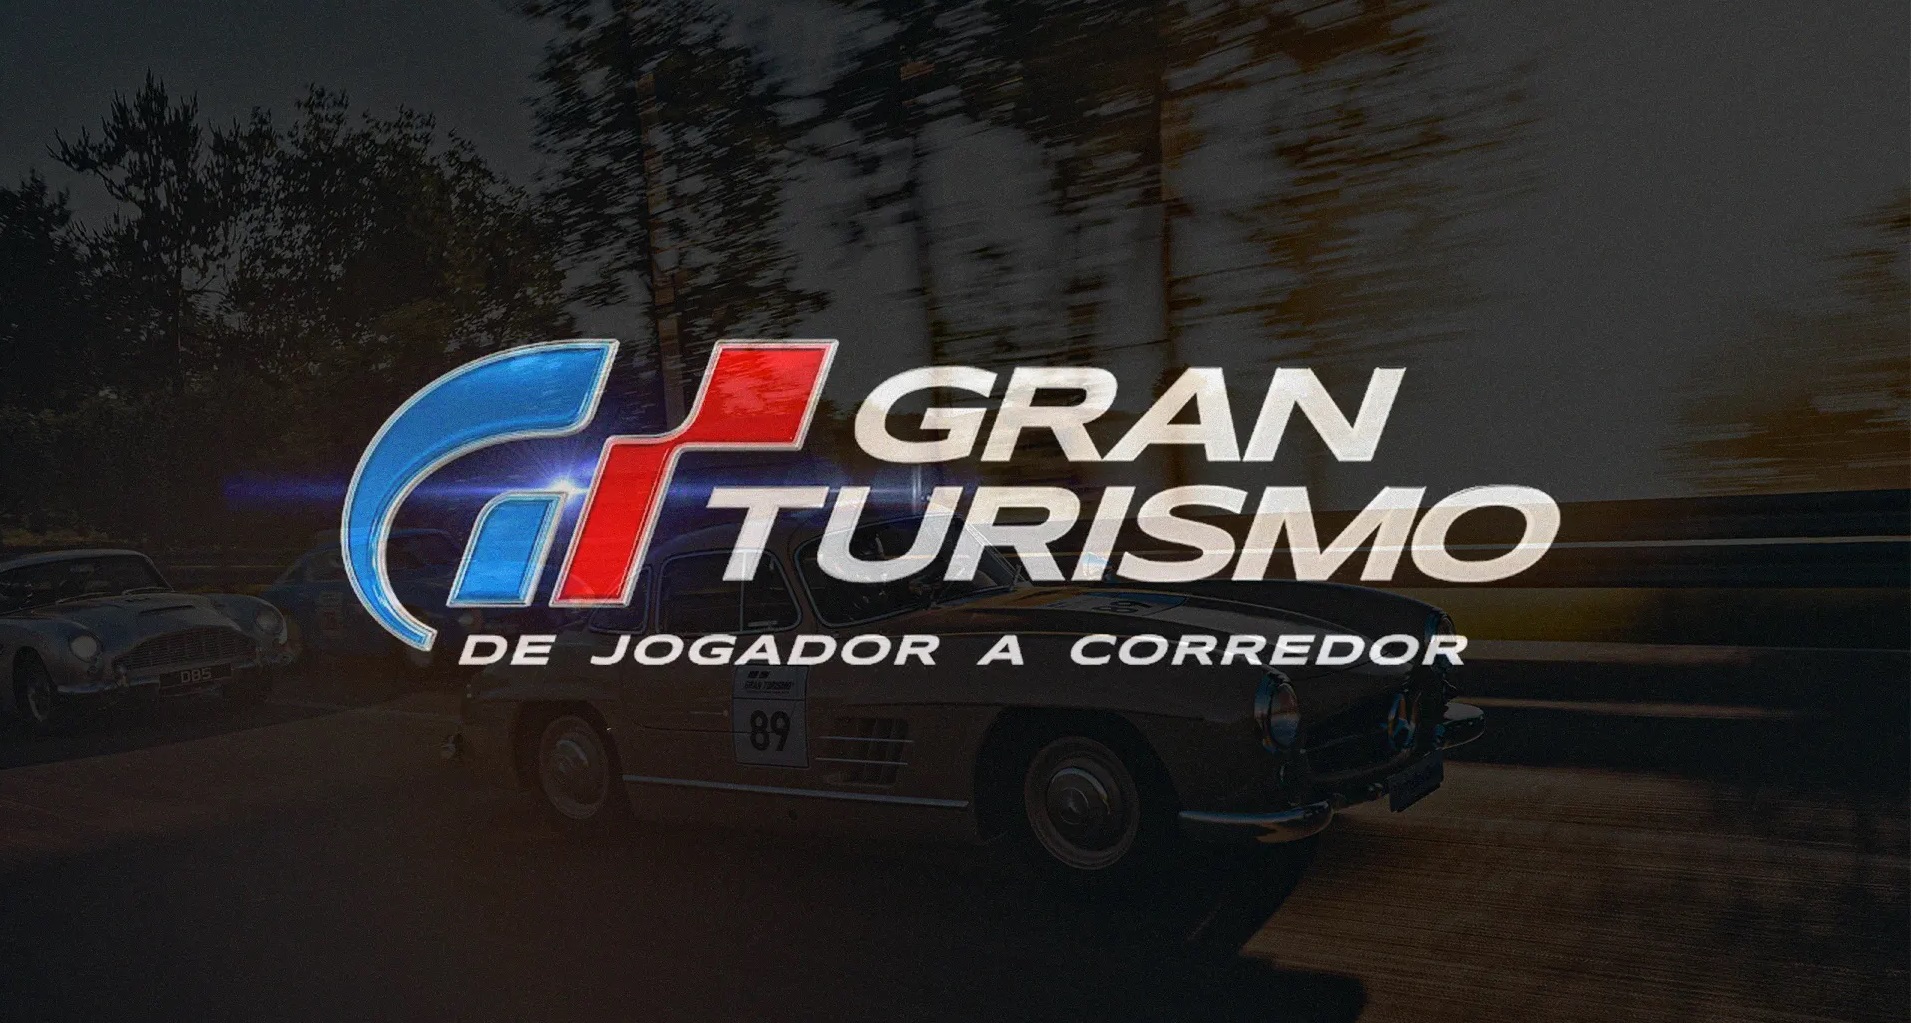 Gran Turismo - De Jogador a Corredor